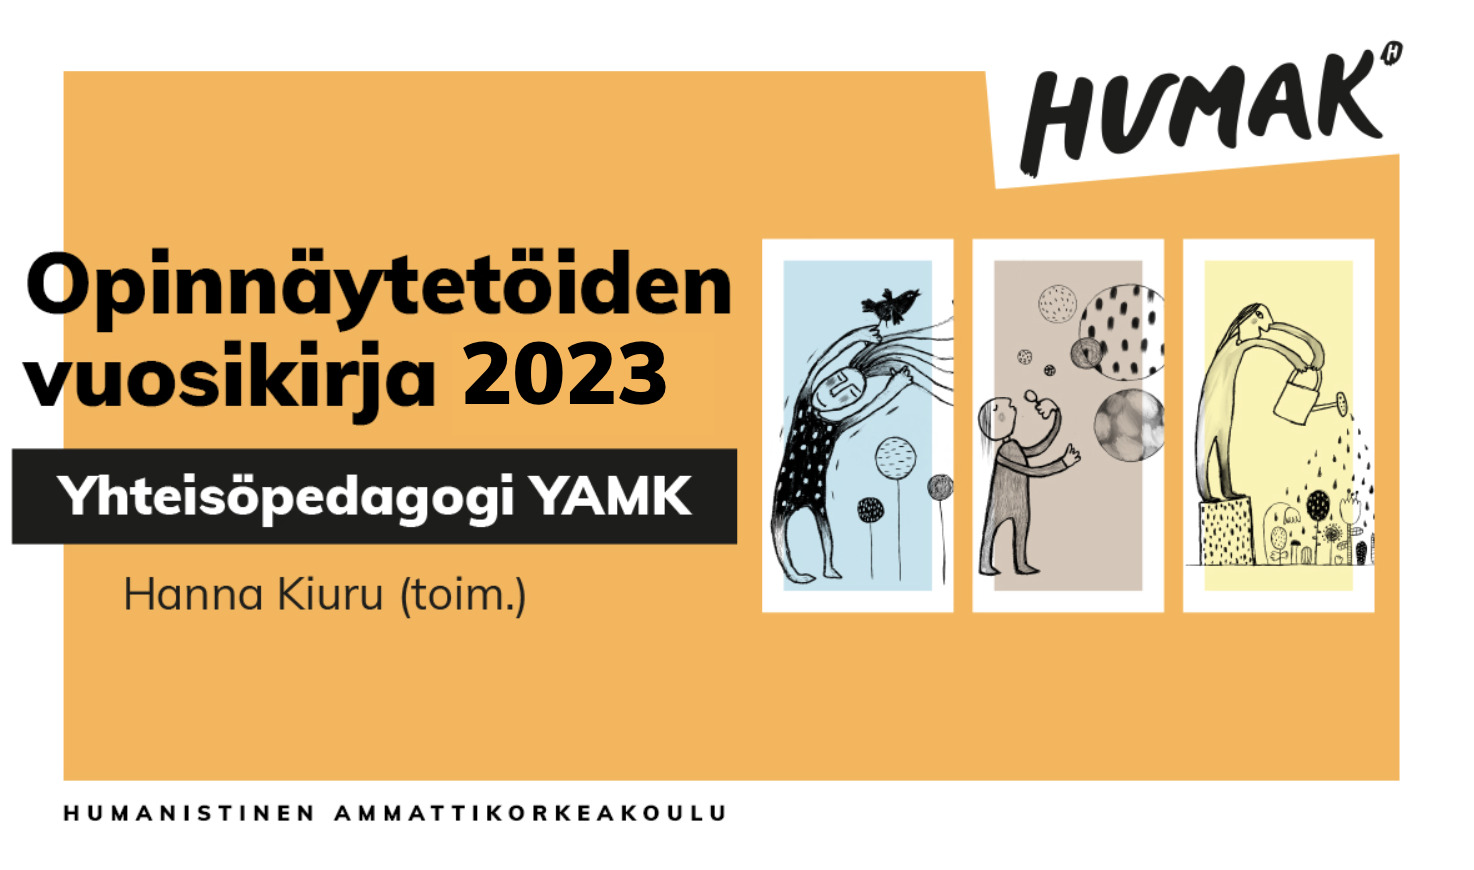 Hanna Kiuru (toim.) Opinnäytetöiden vuosikirja 2023 – Yhteisöpedagogi YAMK